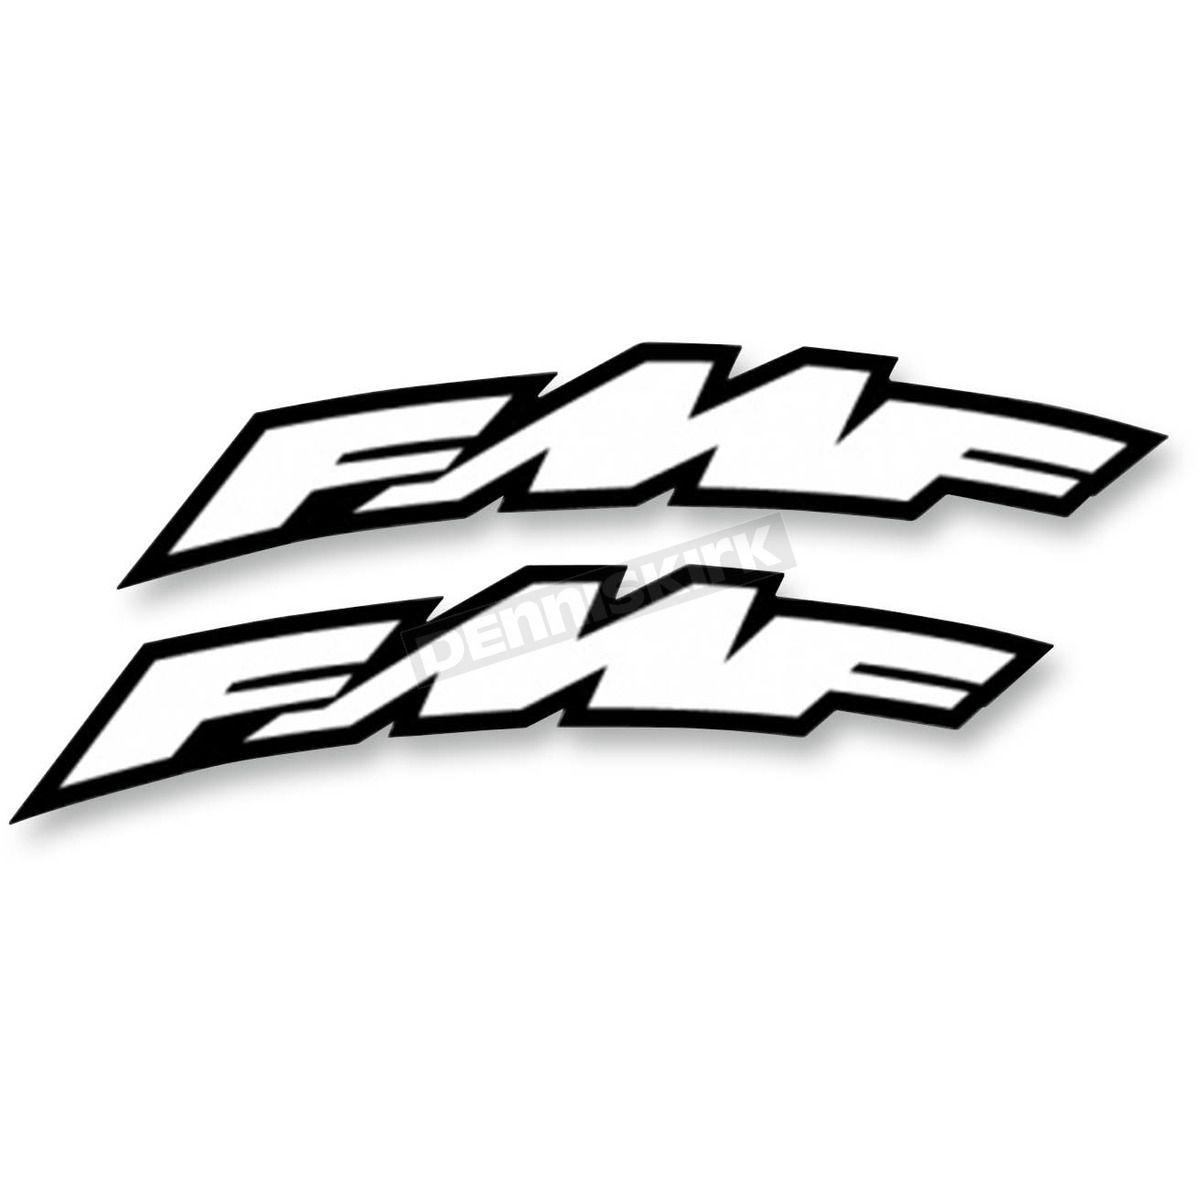 FMF Logo - FMF Large Arch FMF Logo Fender Sticker - 010603 Dirt Bike Motocross ...